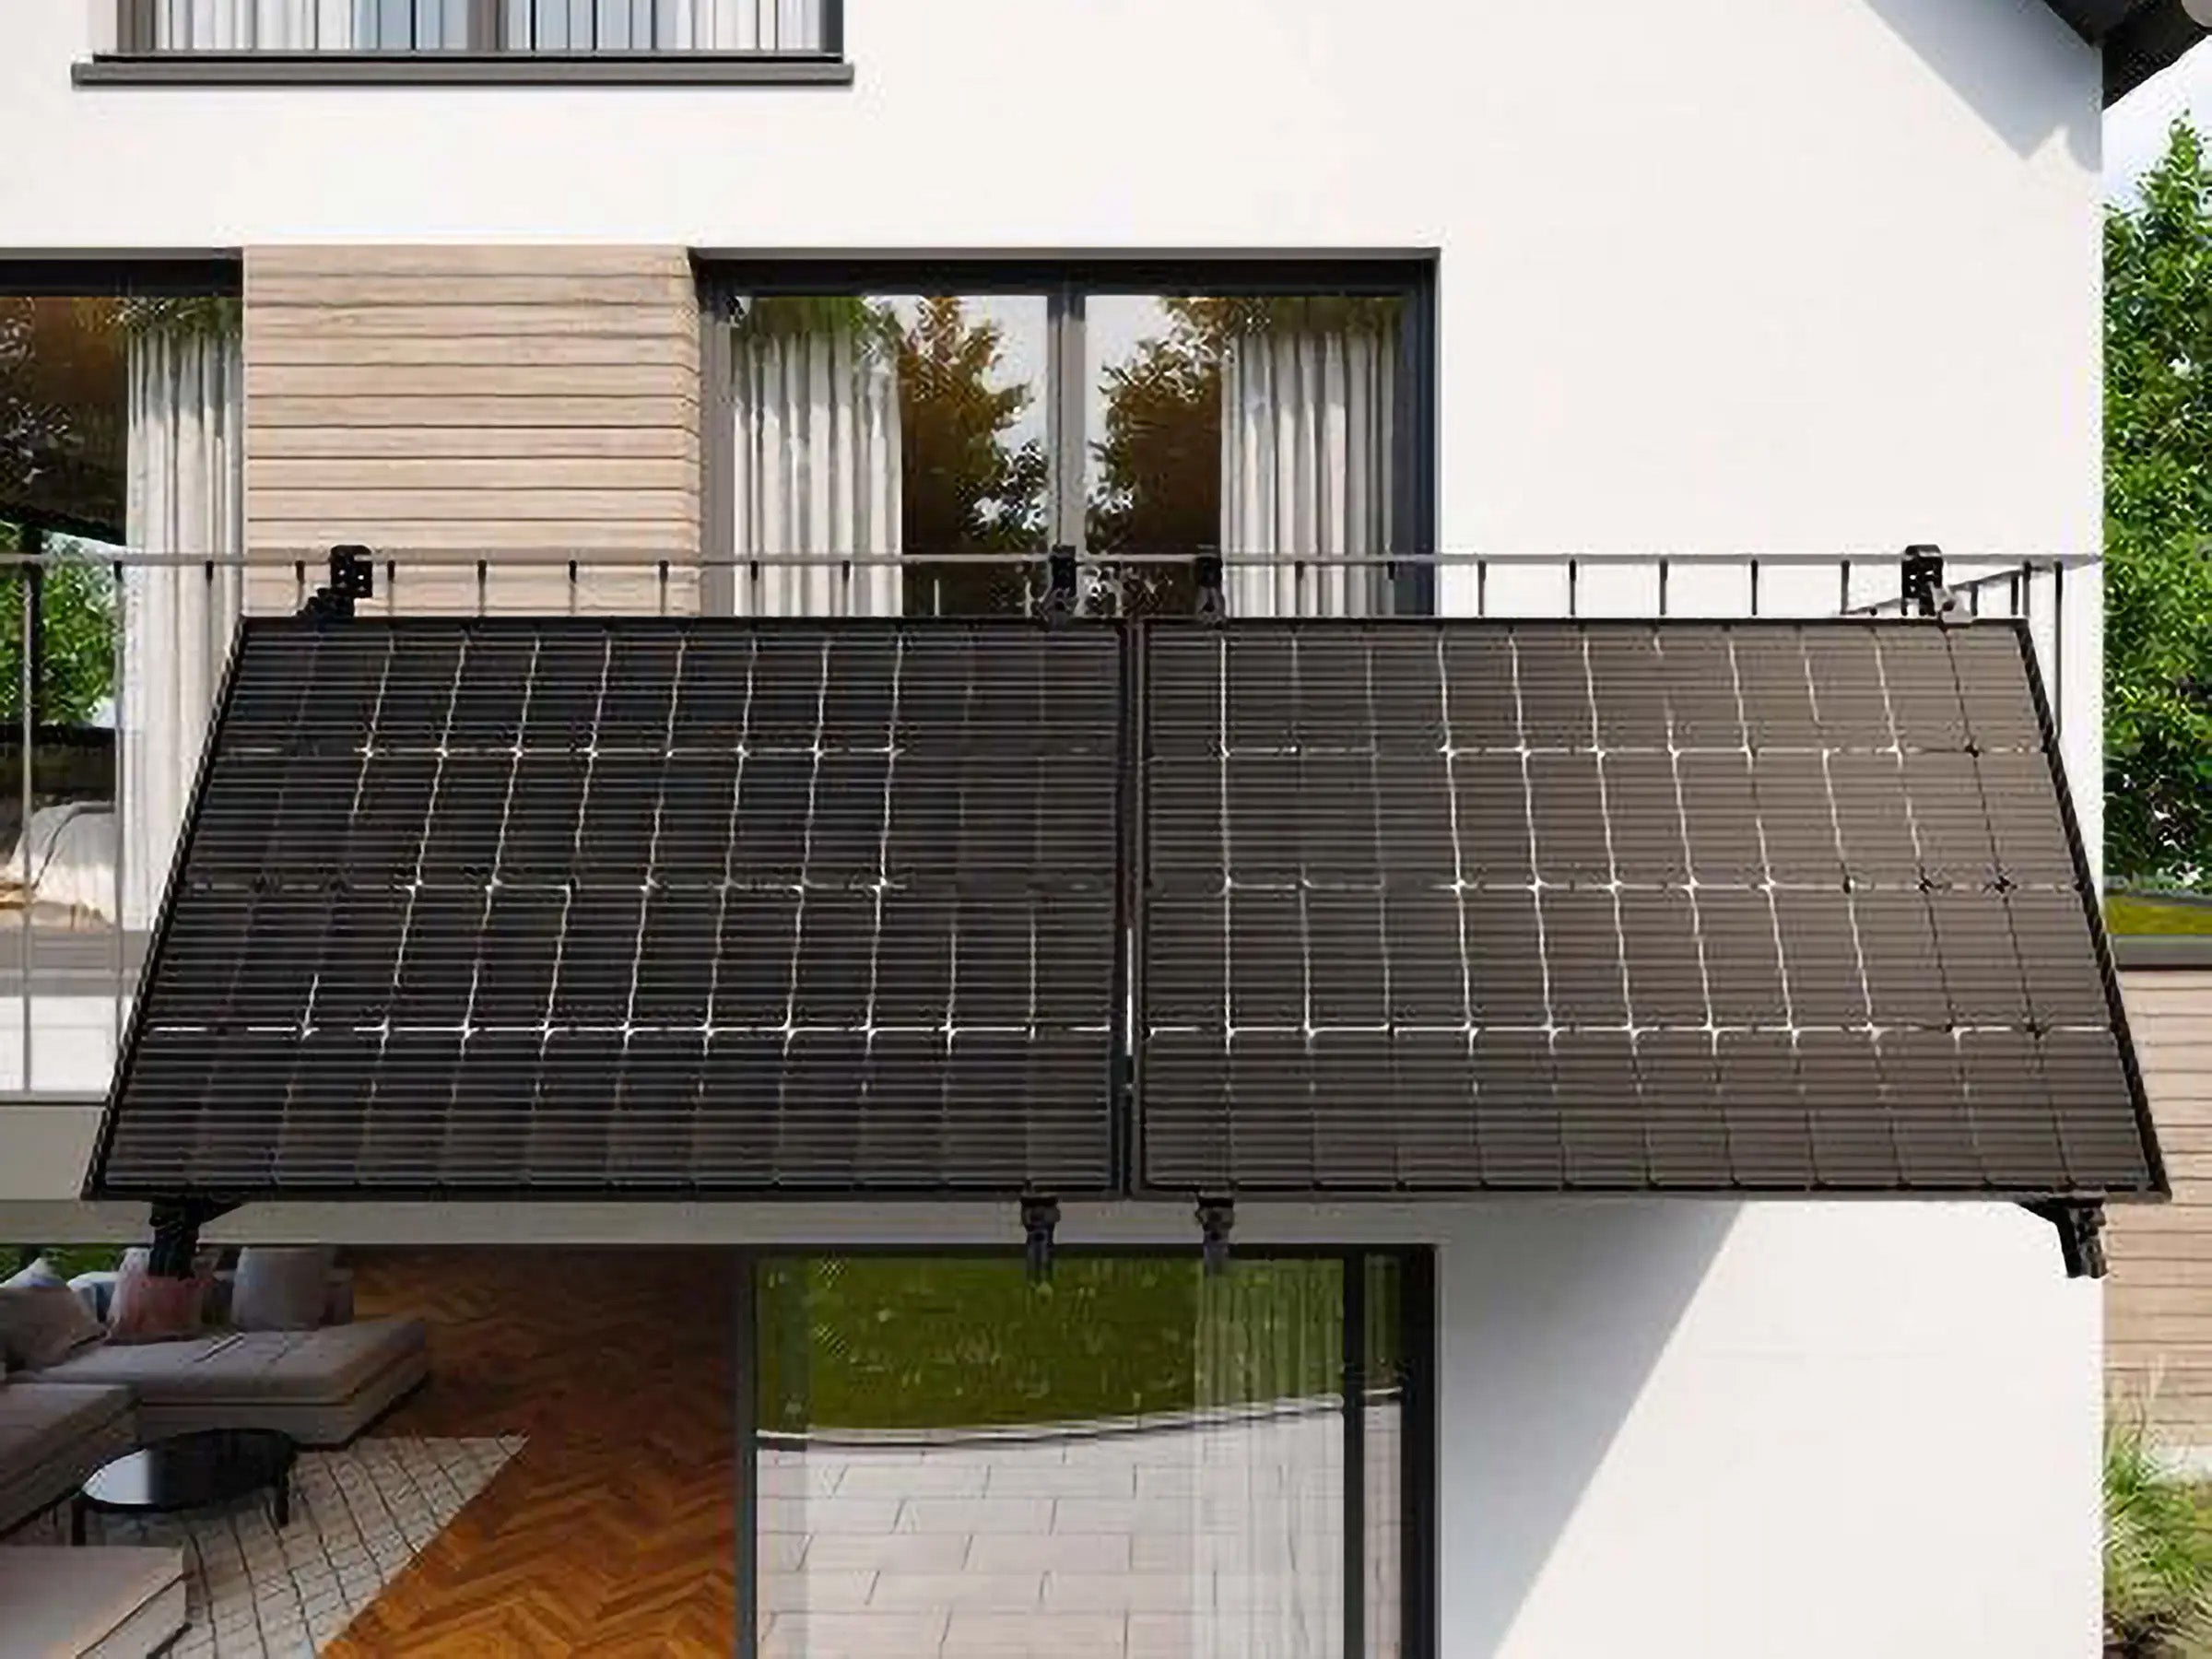 #Solarpaket I endlich verabschiedet: Das lange Warten hat ein Ende